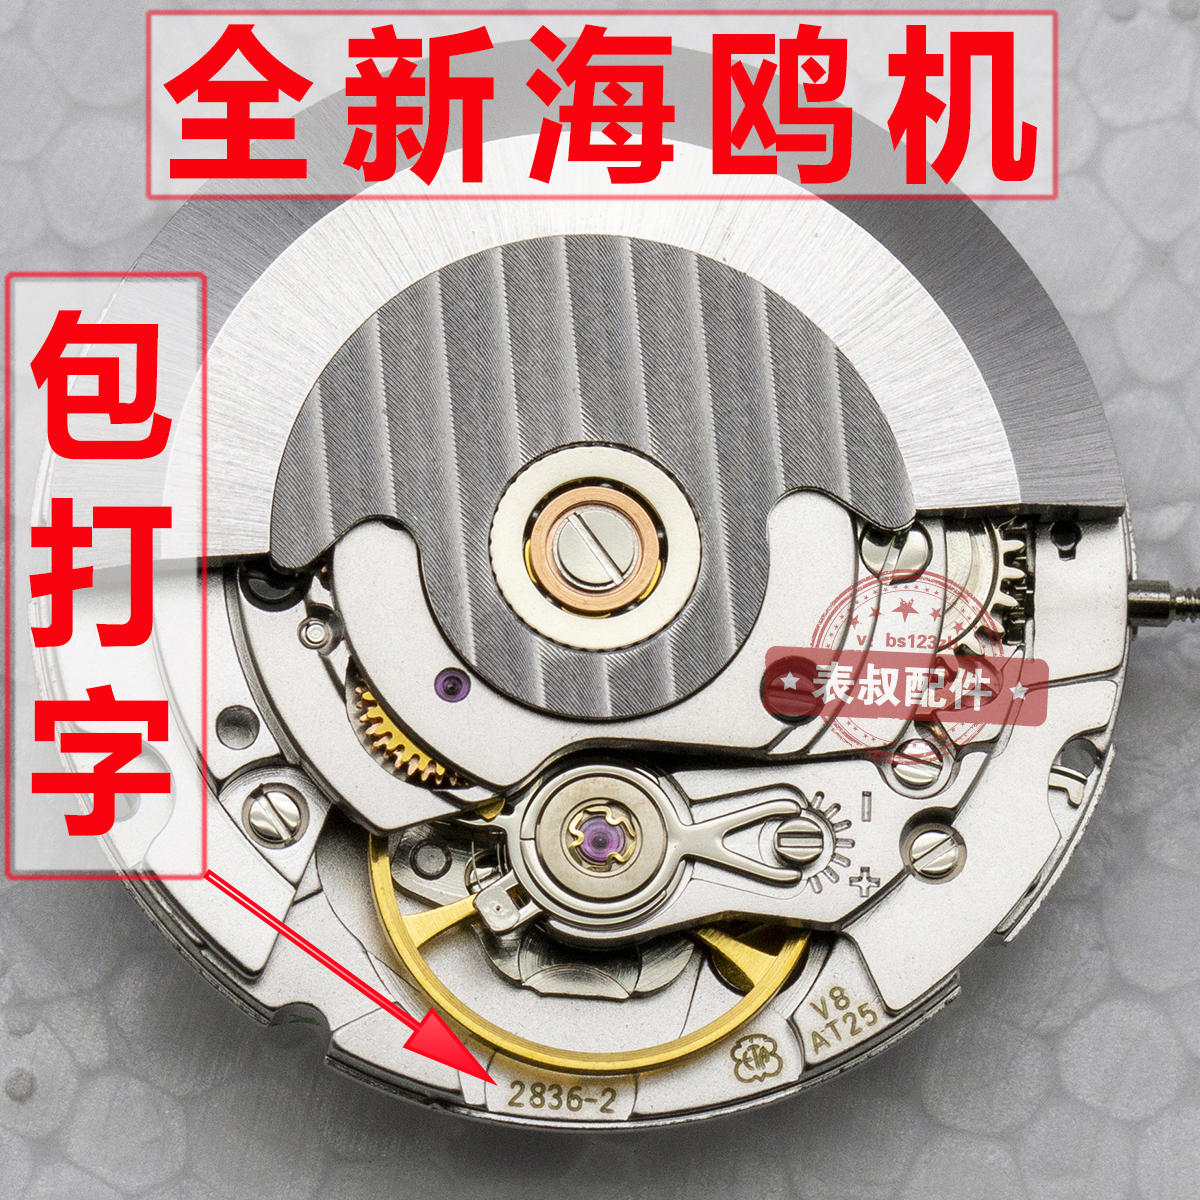 全新国产天津海鸥ETA2836-2可代替瑞士机芯V8可配表壳组装手表